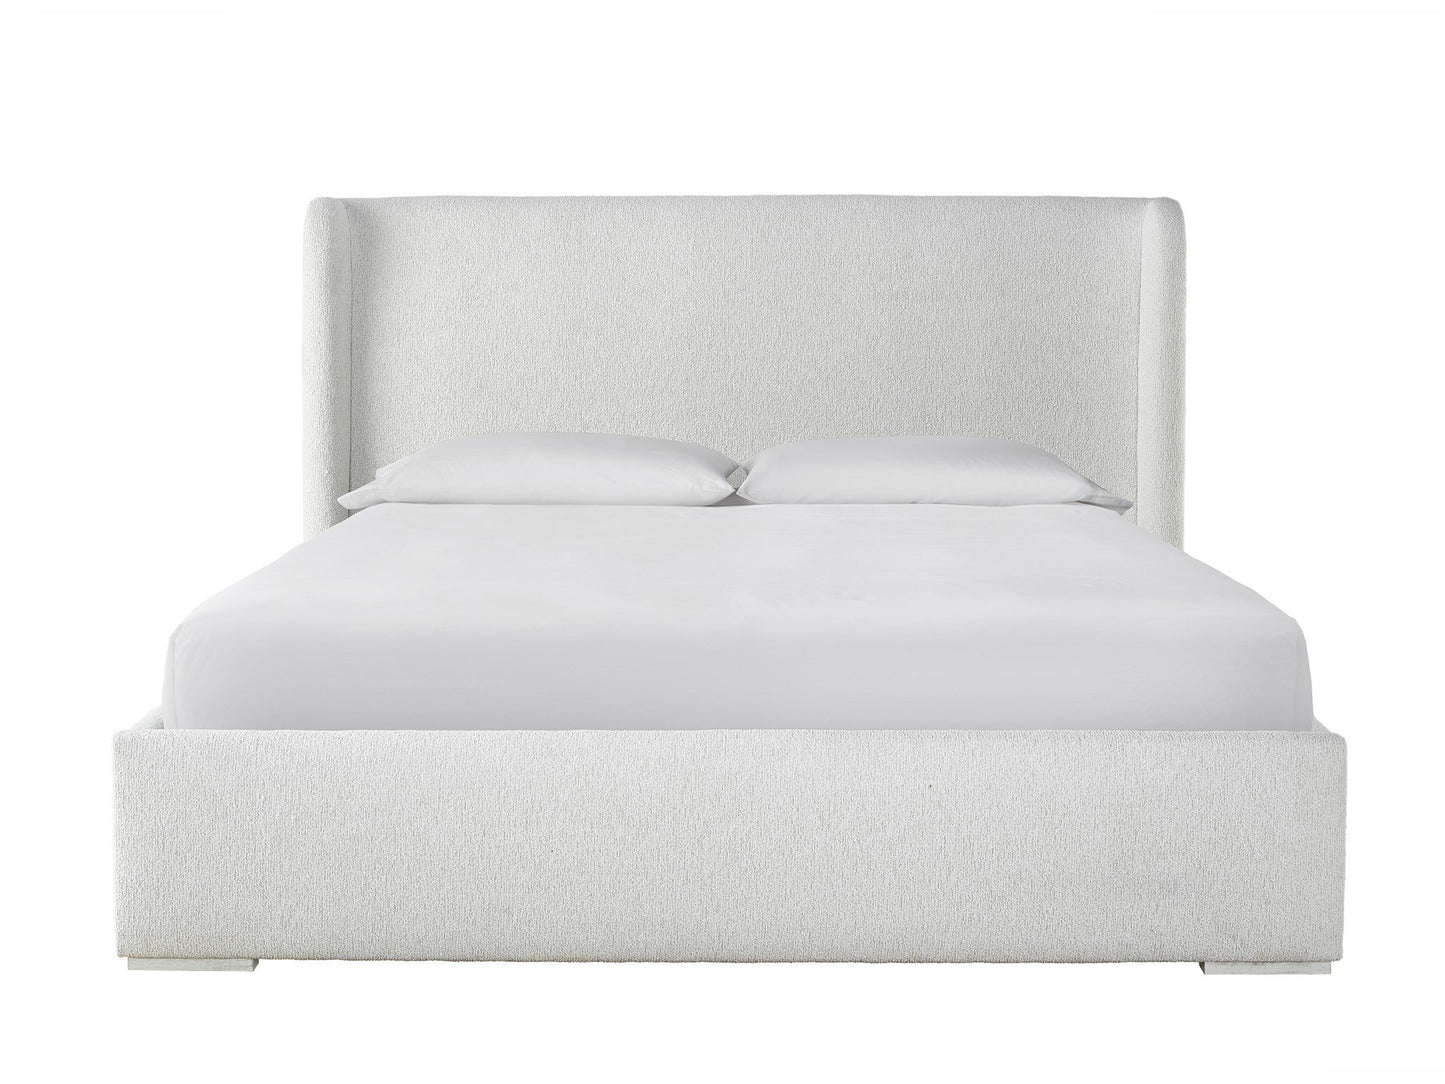 Restore Upholstered Bed Queen